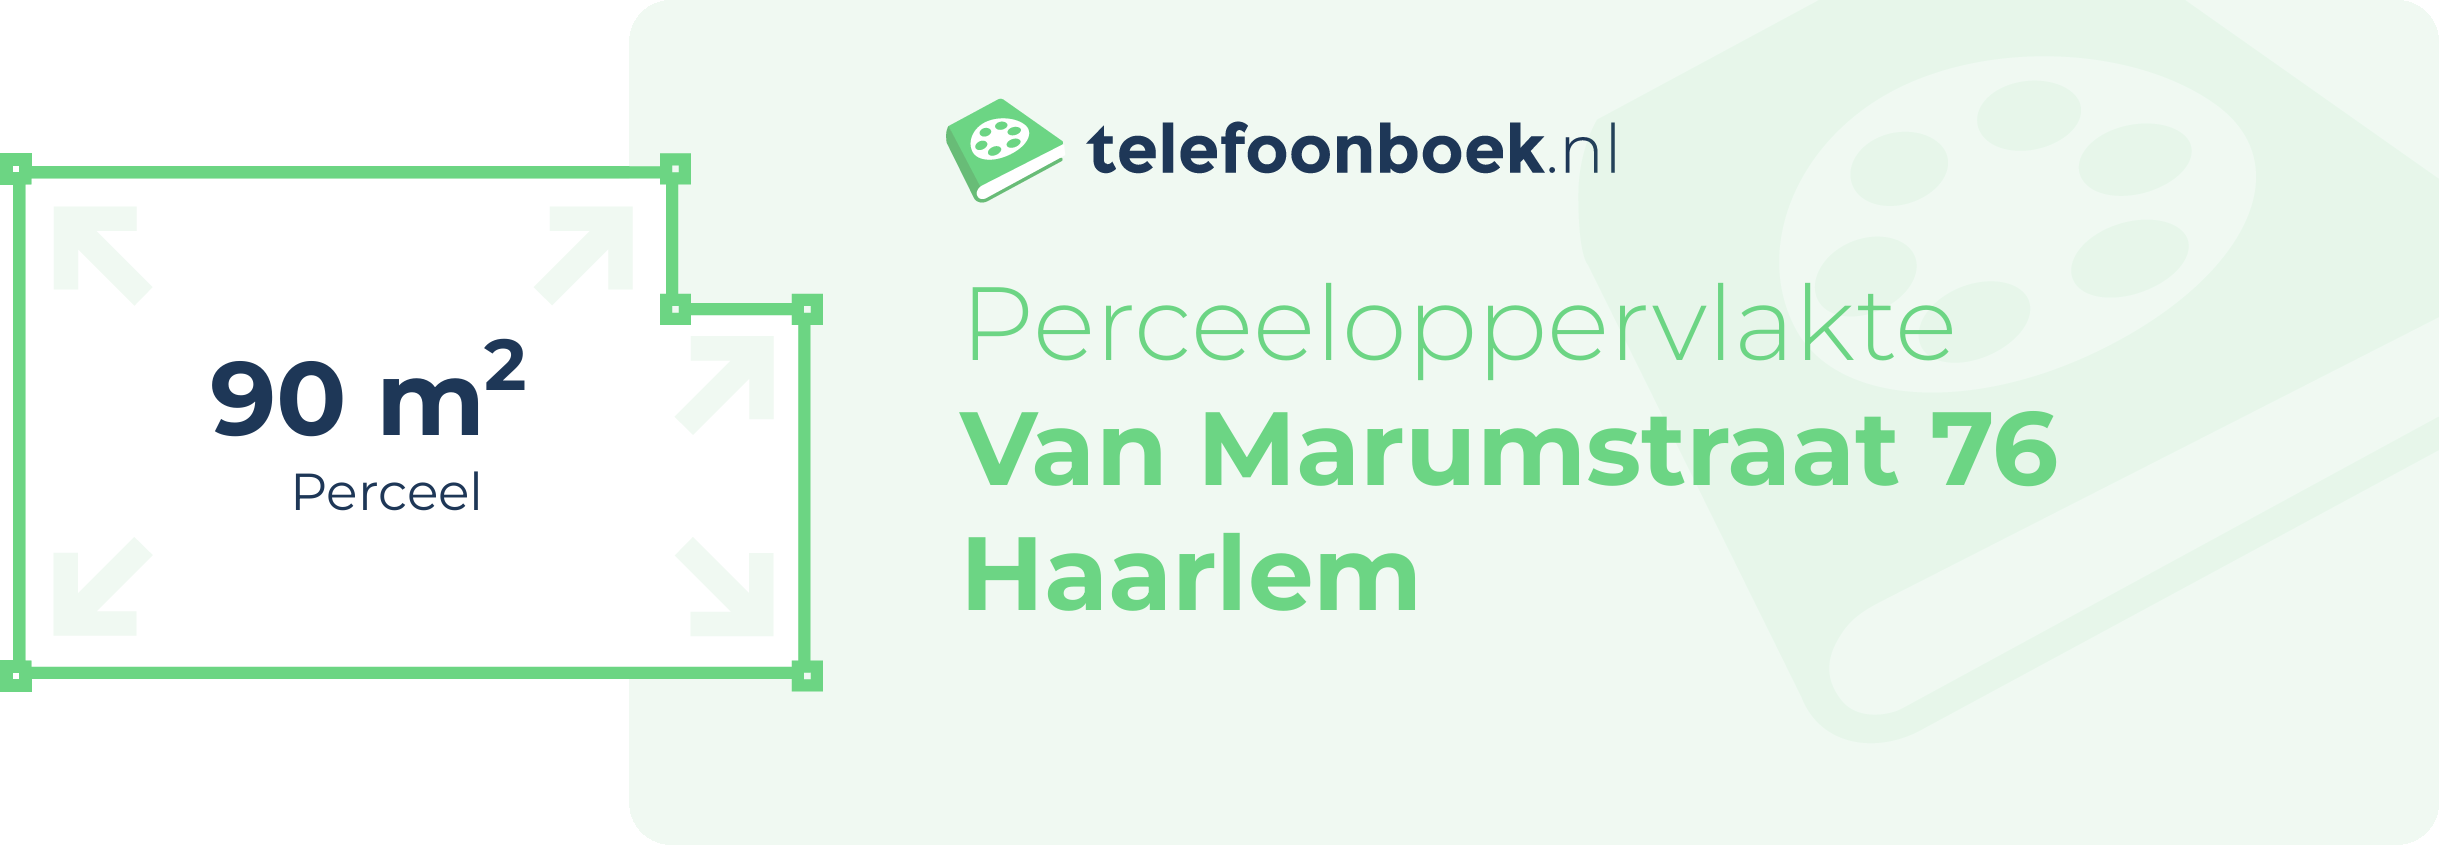 Perceeloppervlakte Van Marumstraat 76 Haarlem